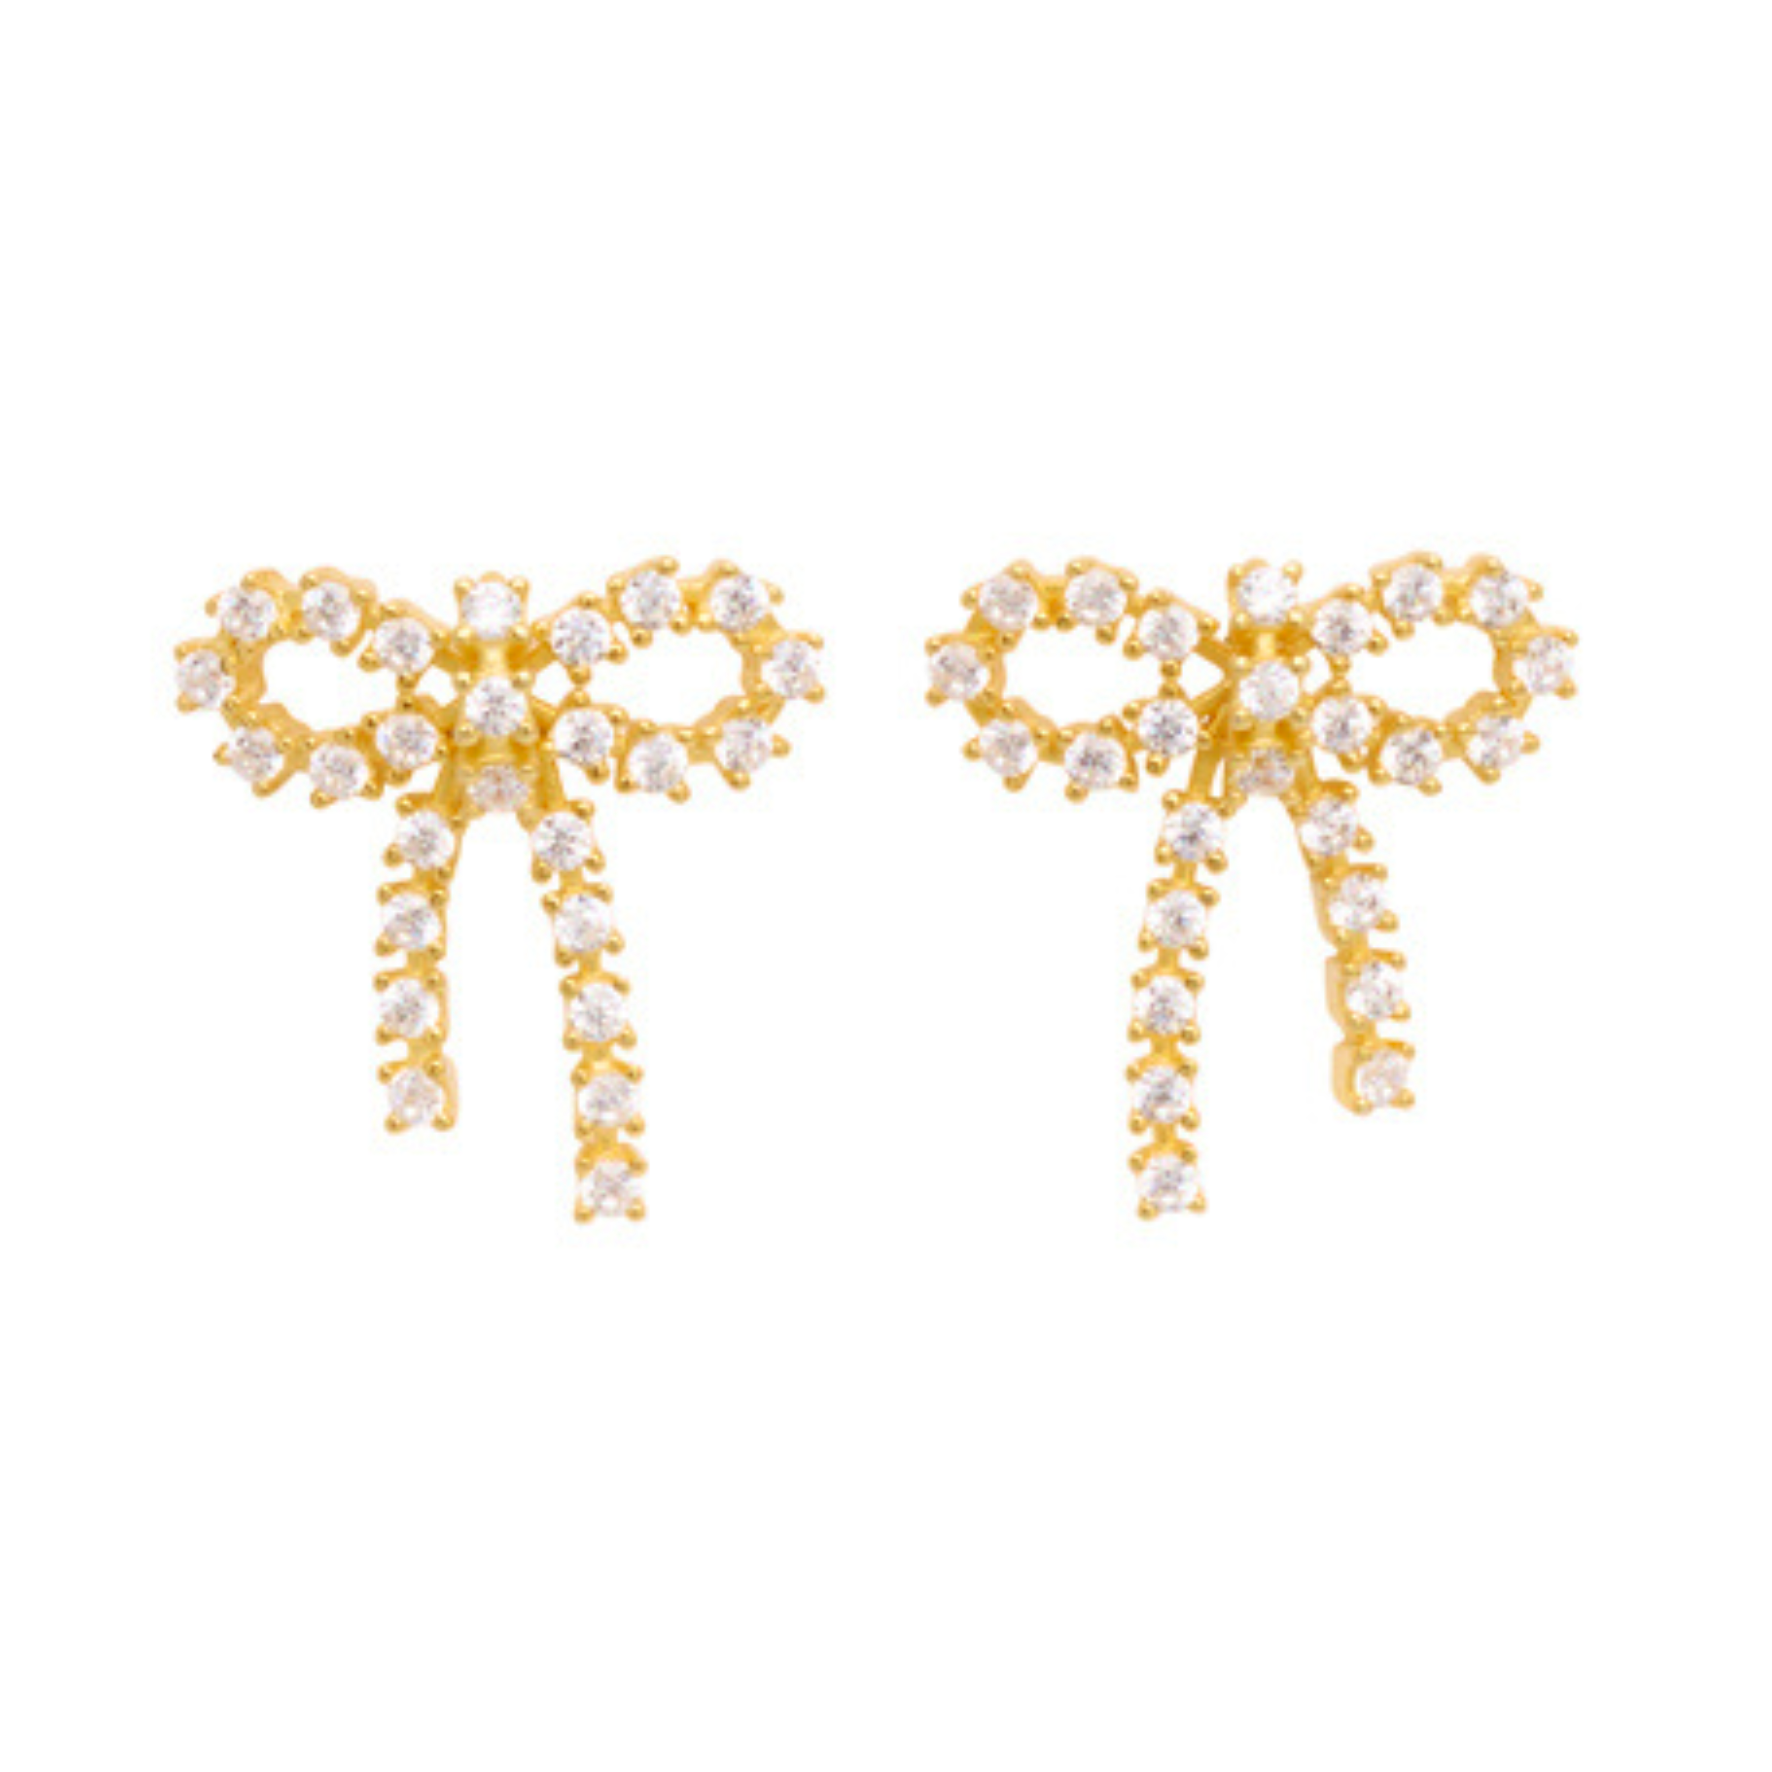 Arco Small Crystal Earrings van Pico in Verguld-Zilver Sterling 925